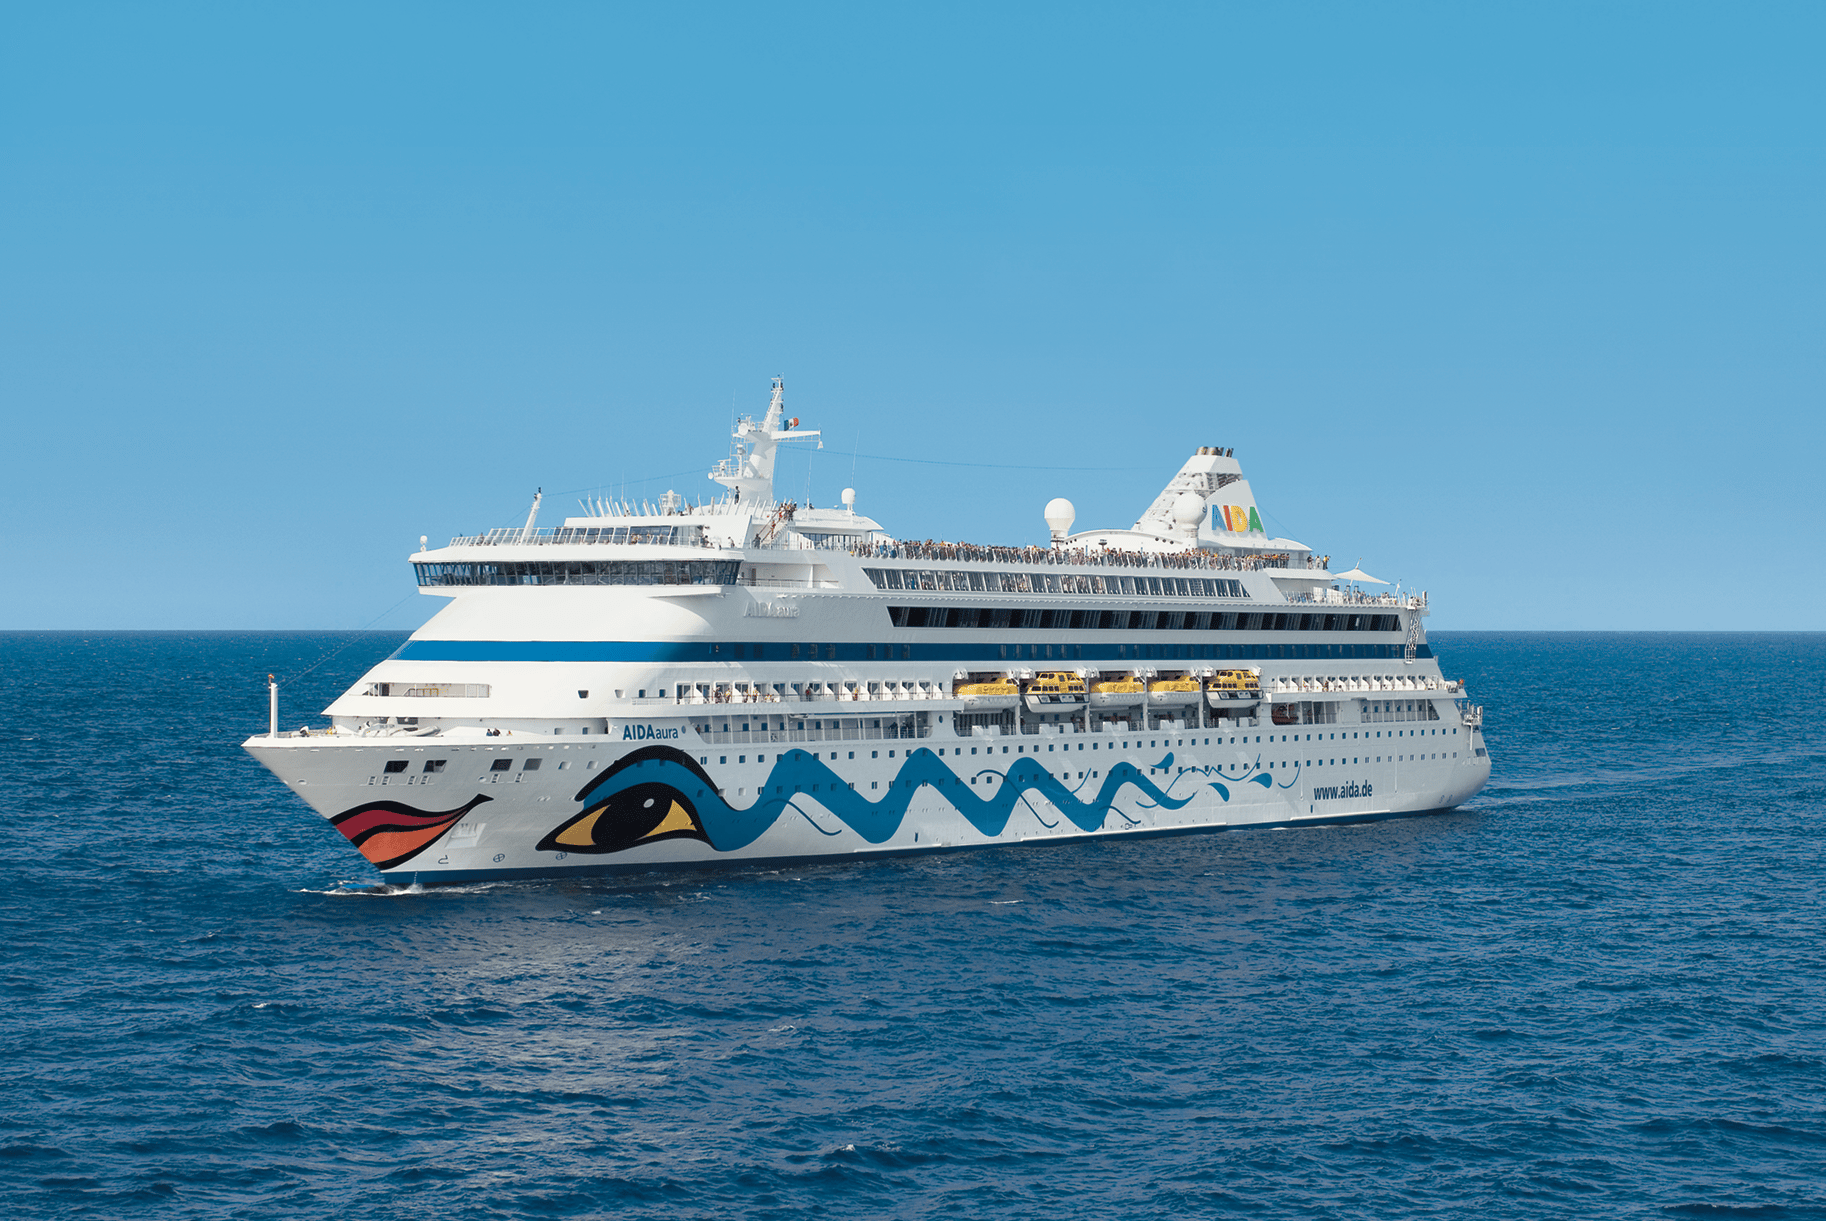 AIDA, Mein Schiff, MSC, Costa und Meer | Poster